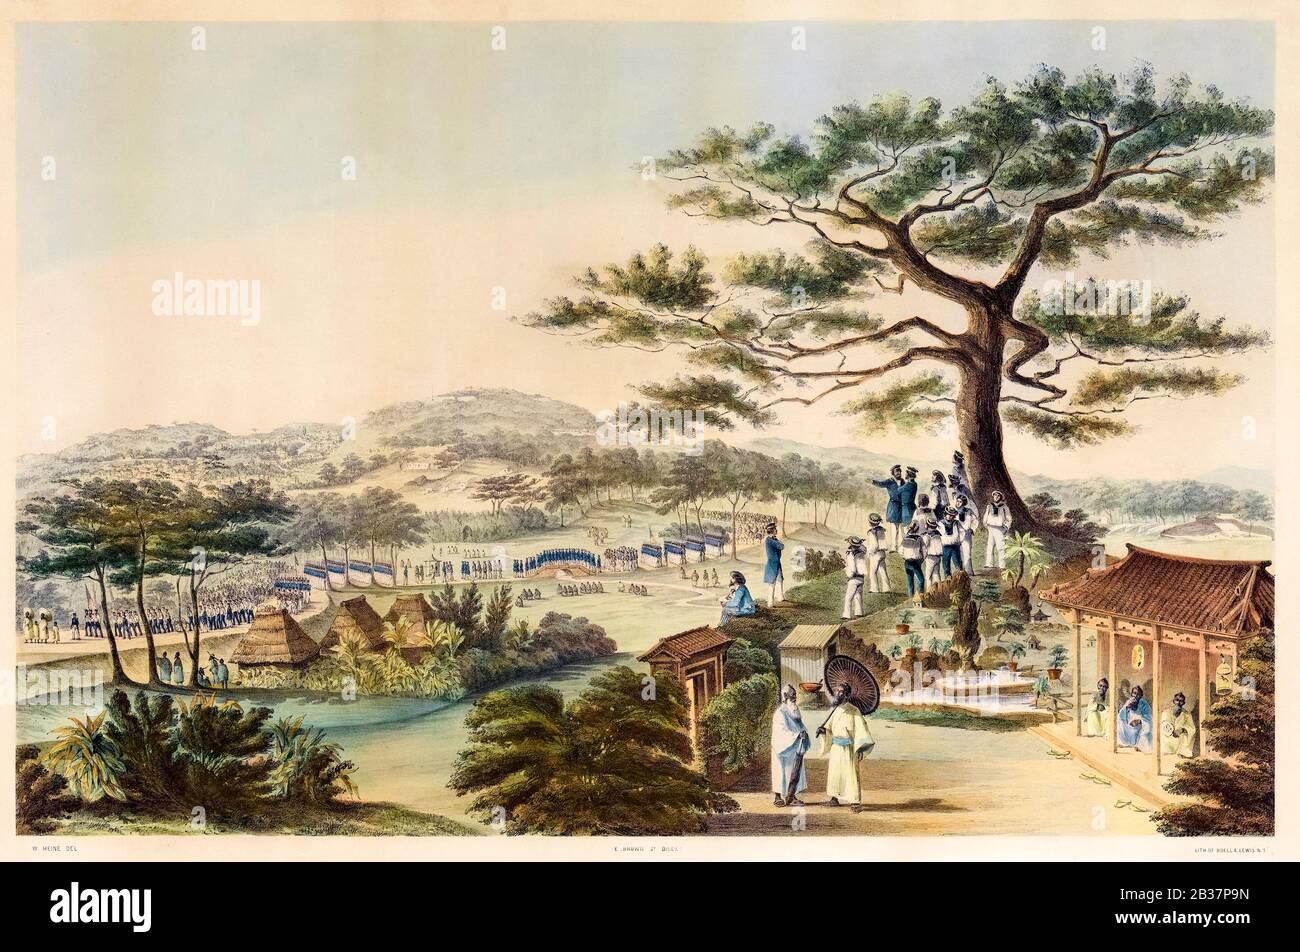 Retour du Commodore Perry, officiers et hommes de l'escadron, d'une Visite officielle au Prince Regent à Shui, capitale de Lew Chew, (îles Ryukyu), 6 juin 1853, imprimer 1855 Banque D'Images